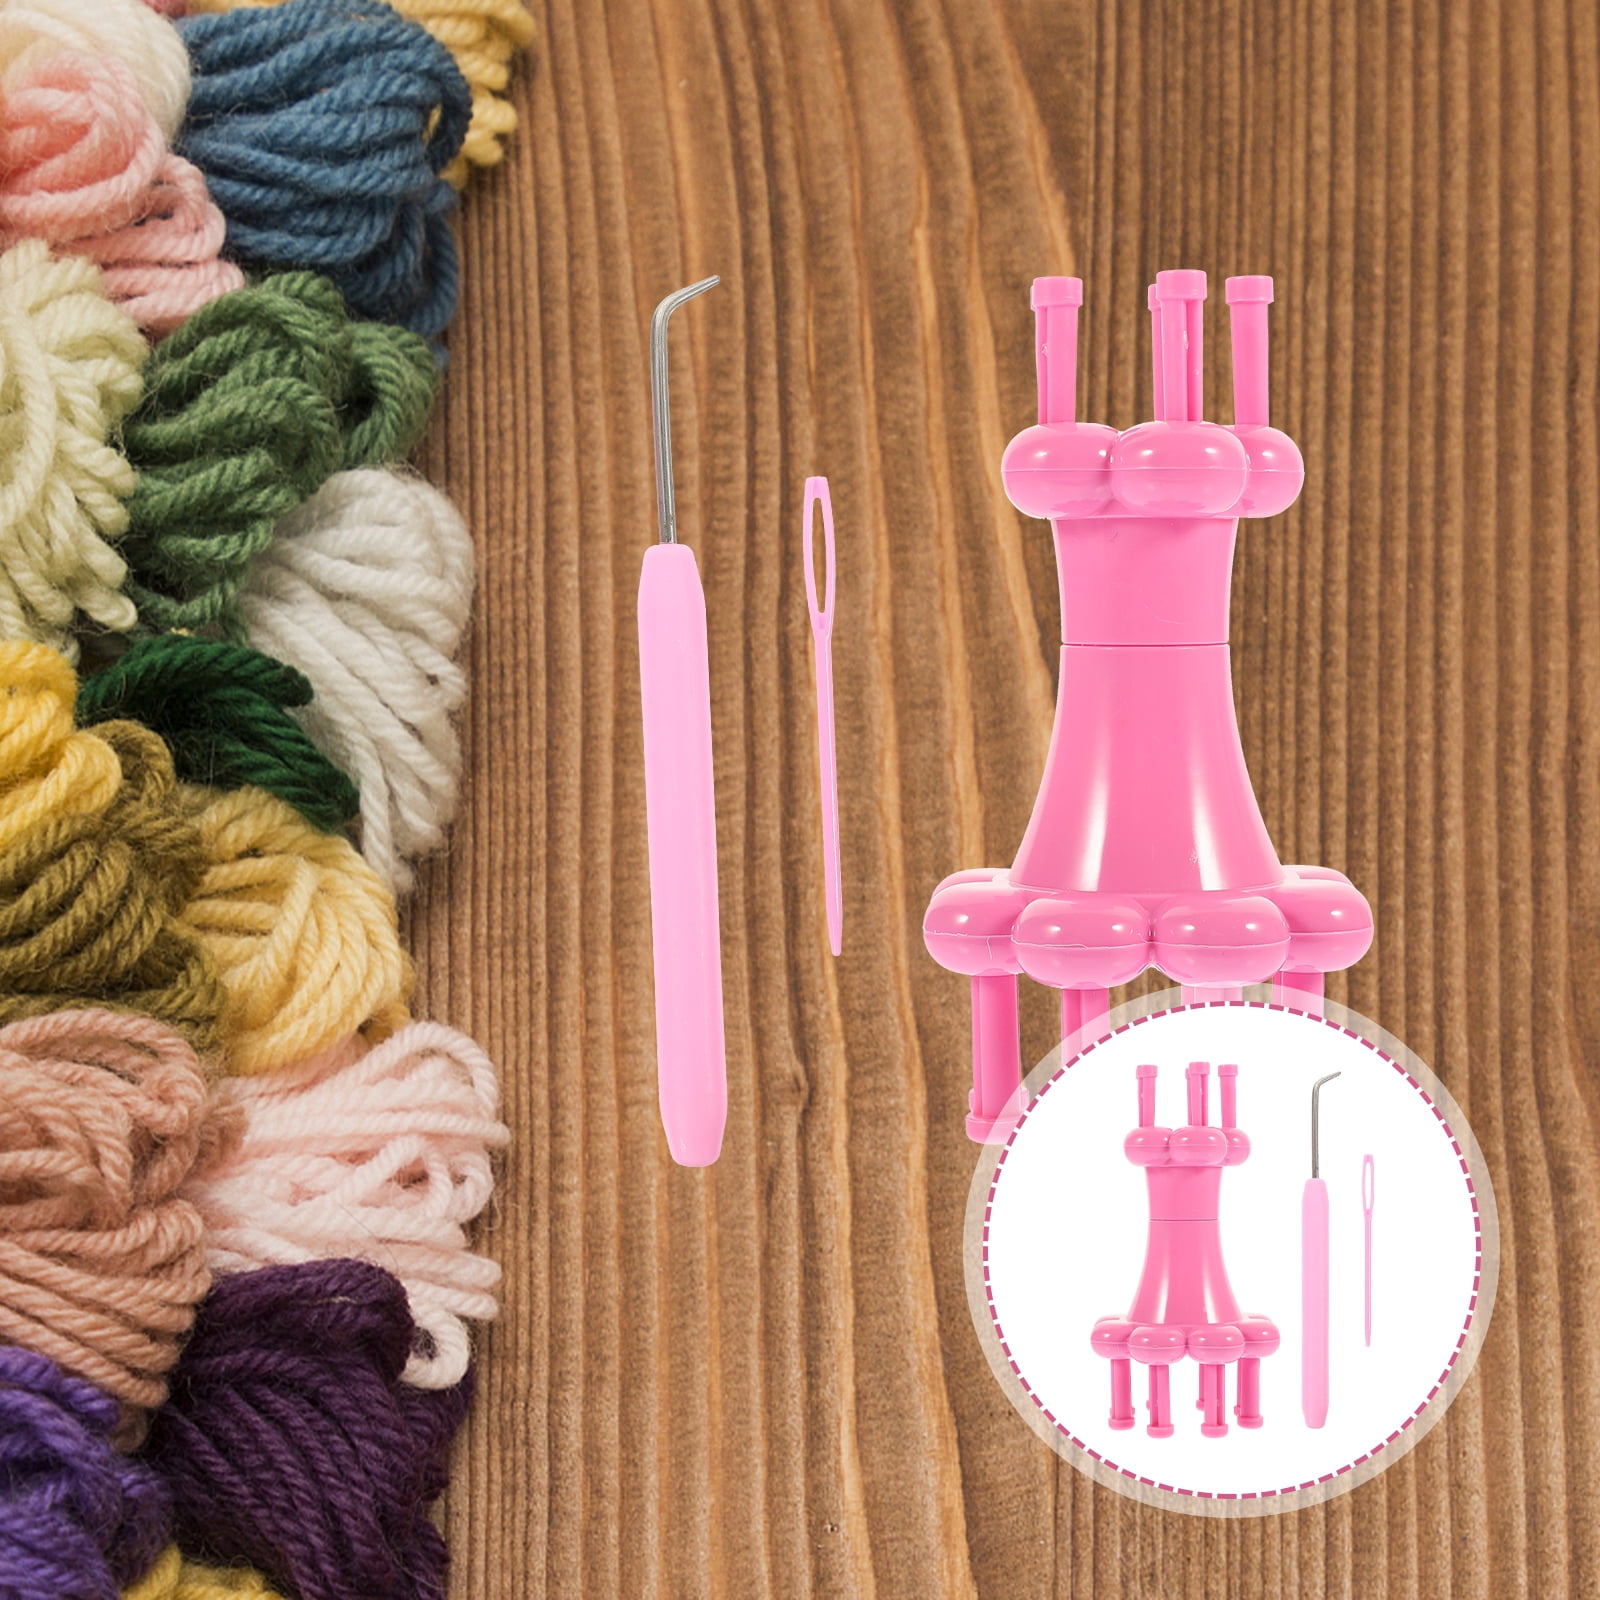 Magic Spool Loom Maker Knitter Knitting Kit+Pull needle+Crochet